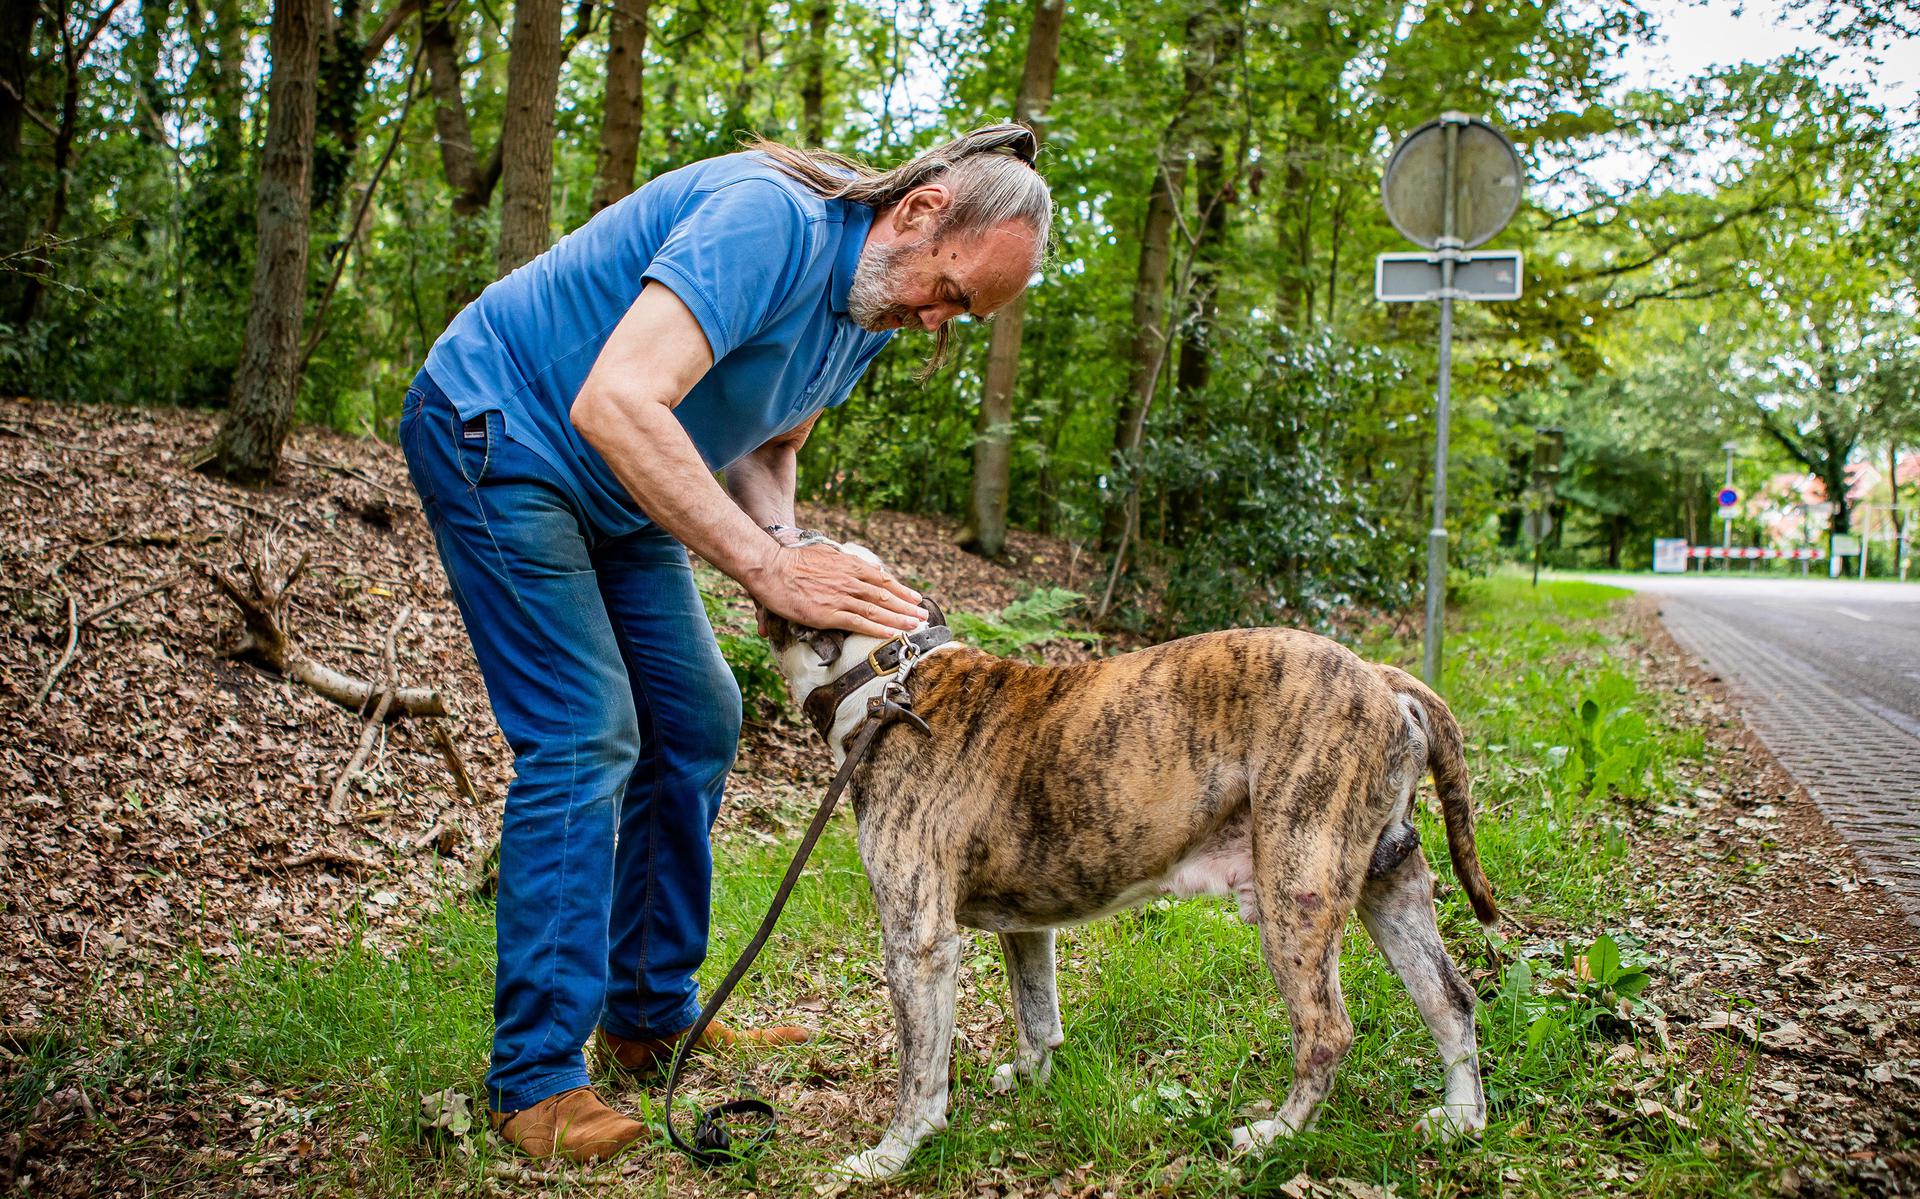 Peste da zecche a Westerwolde, malattia di Lyme in progressione: ‘Sono animali marci’